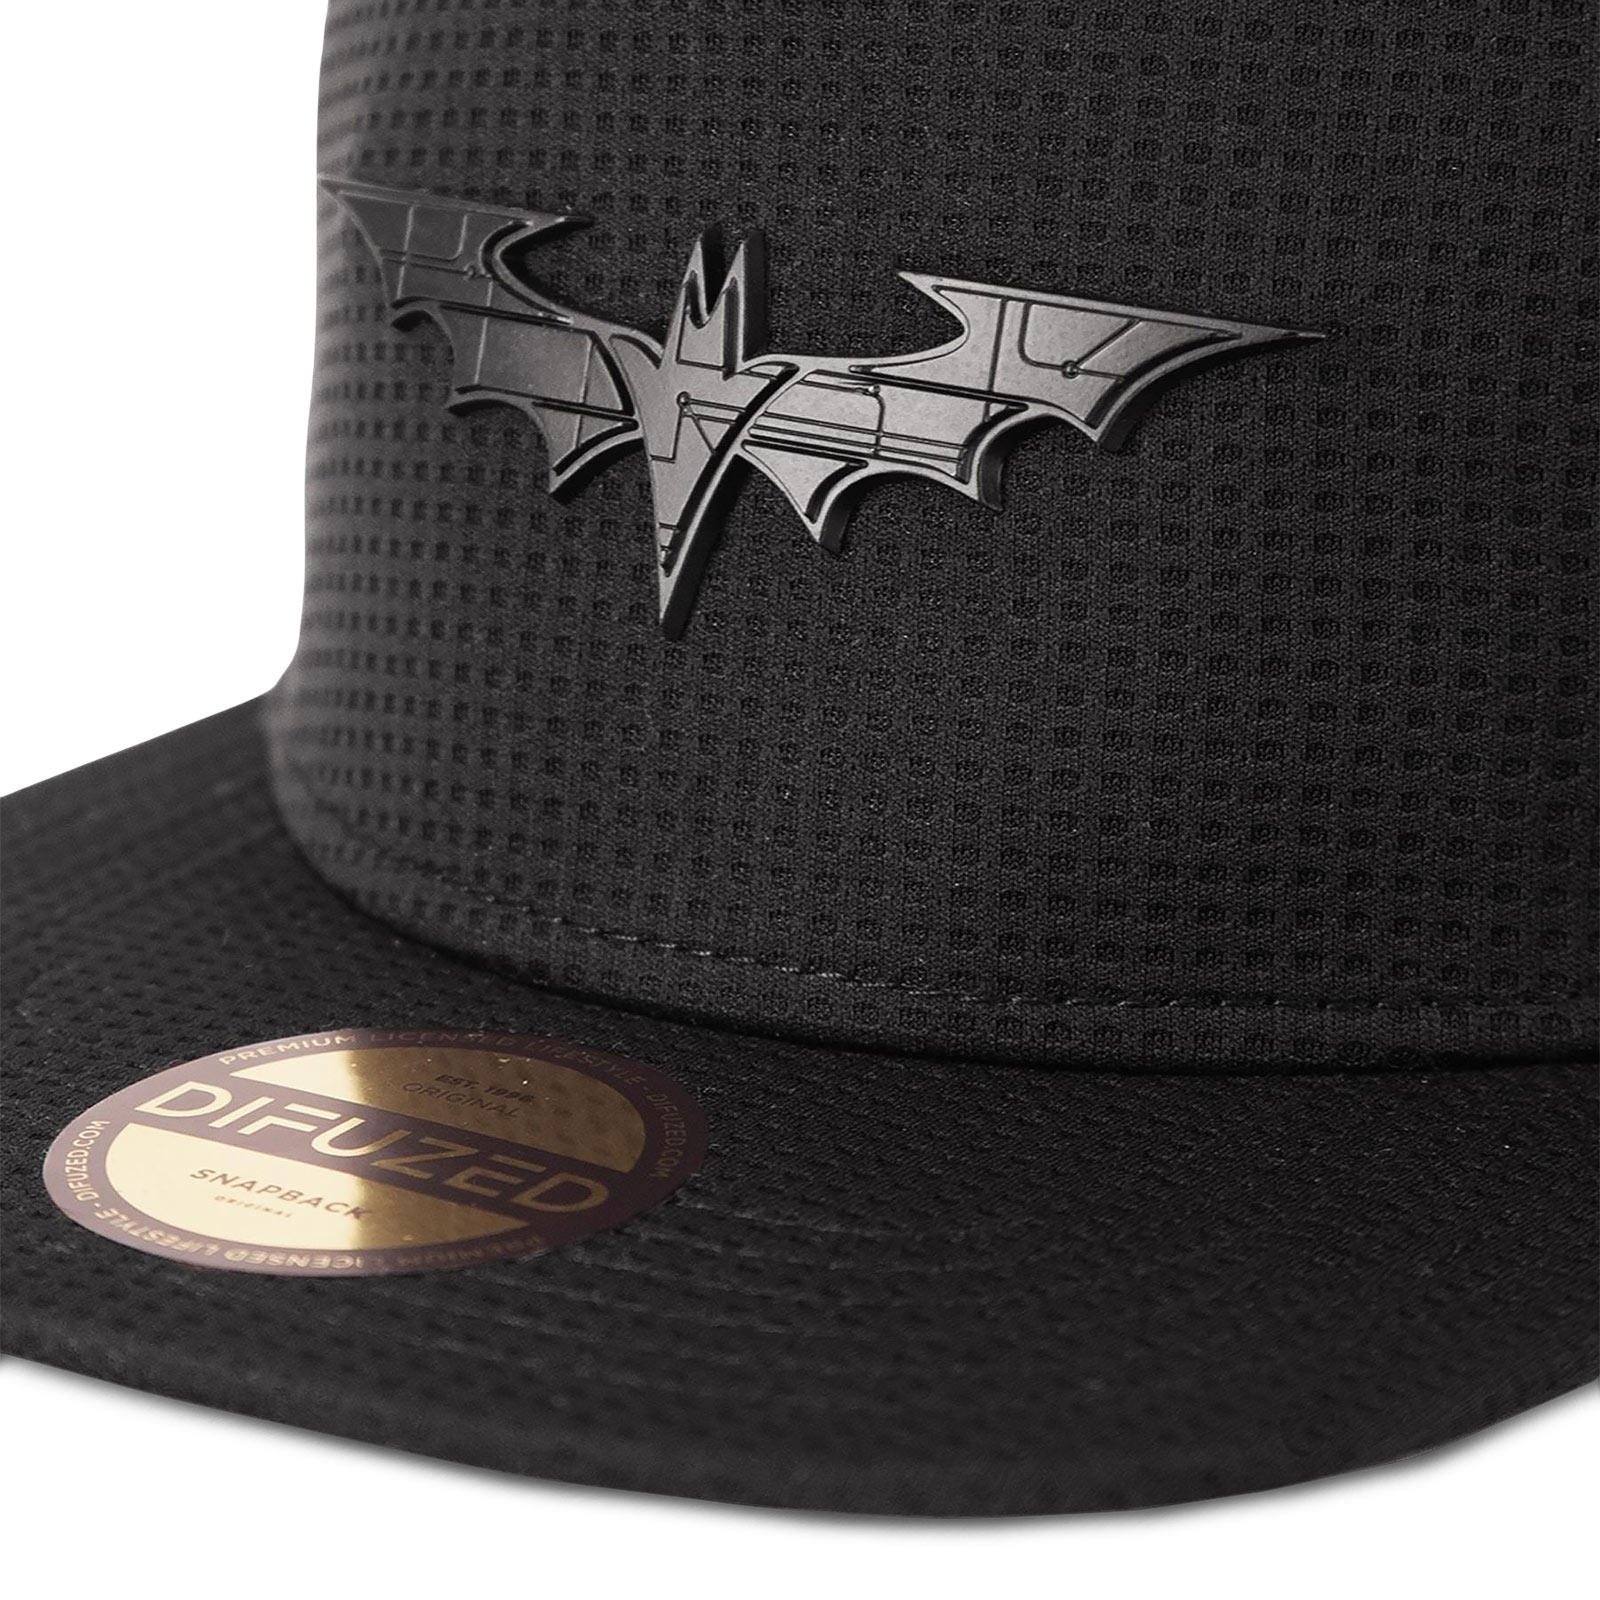 The Batman - Logo Snapback Cap schwarz